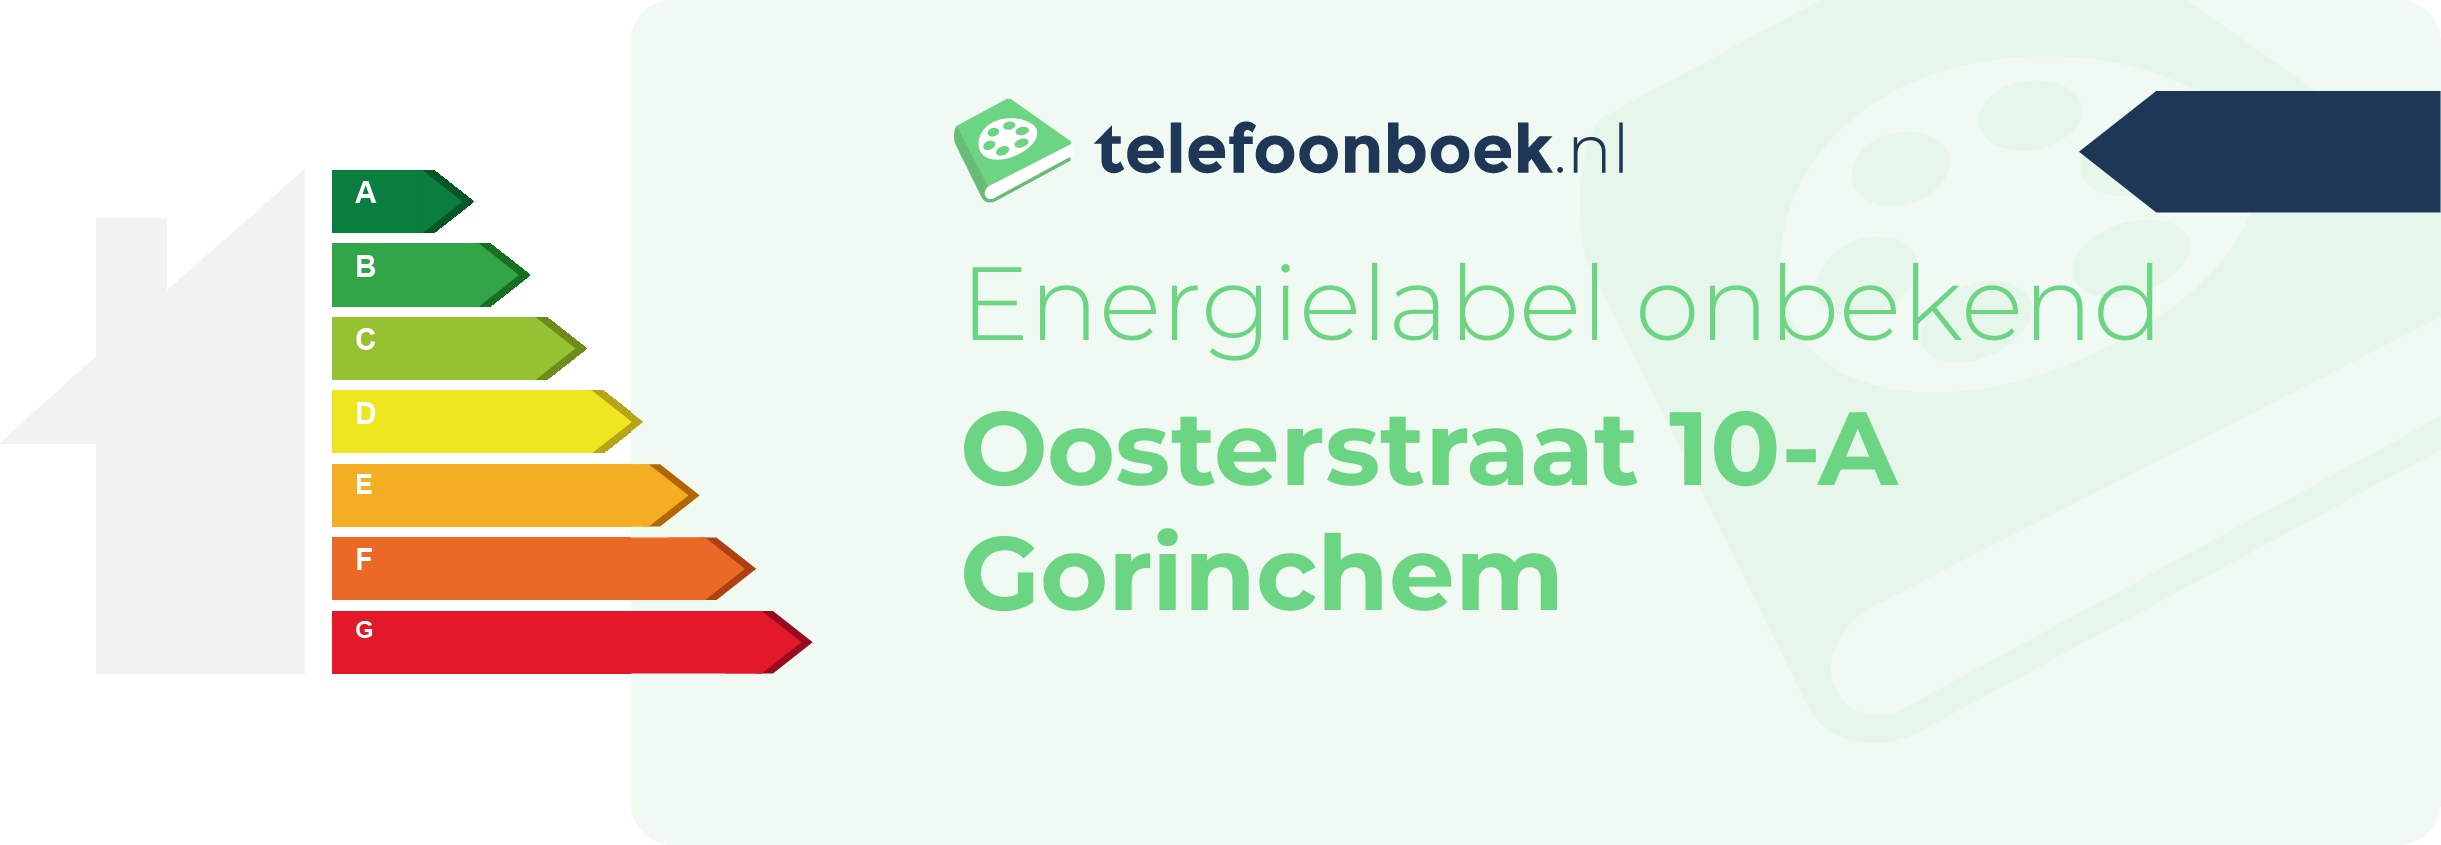 Energielabel Oosterstraat 10-A Gorinchem